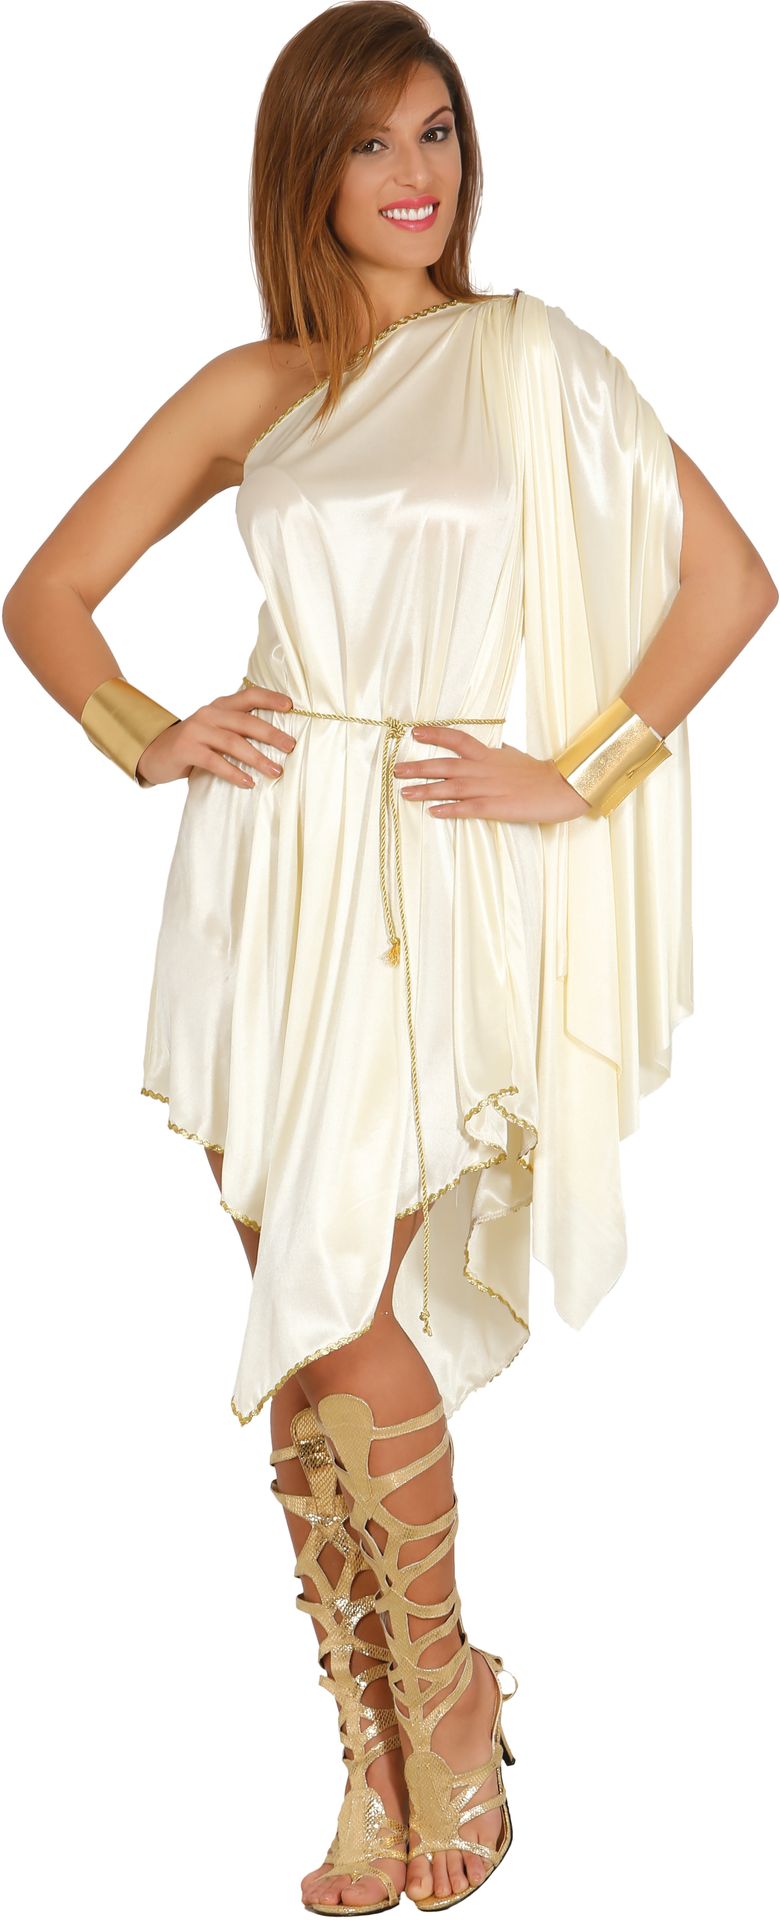 Griekse godin jurk dames